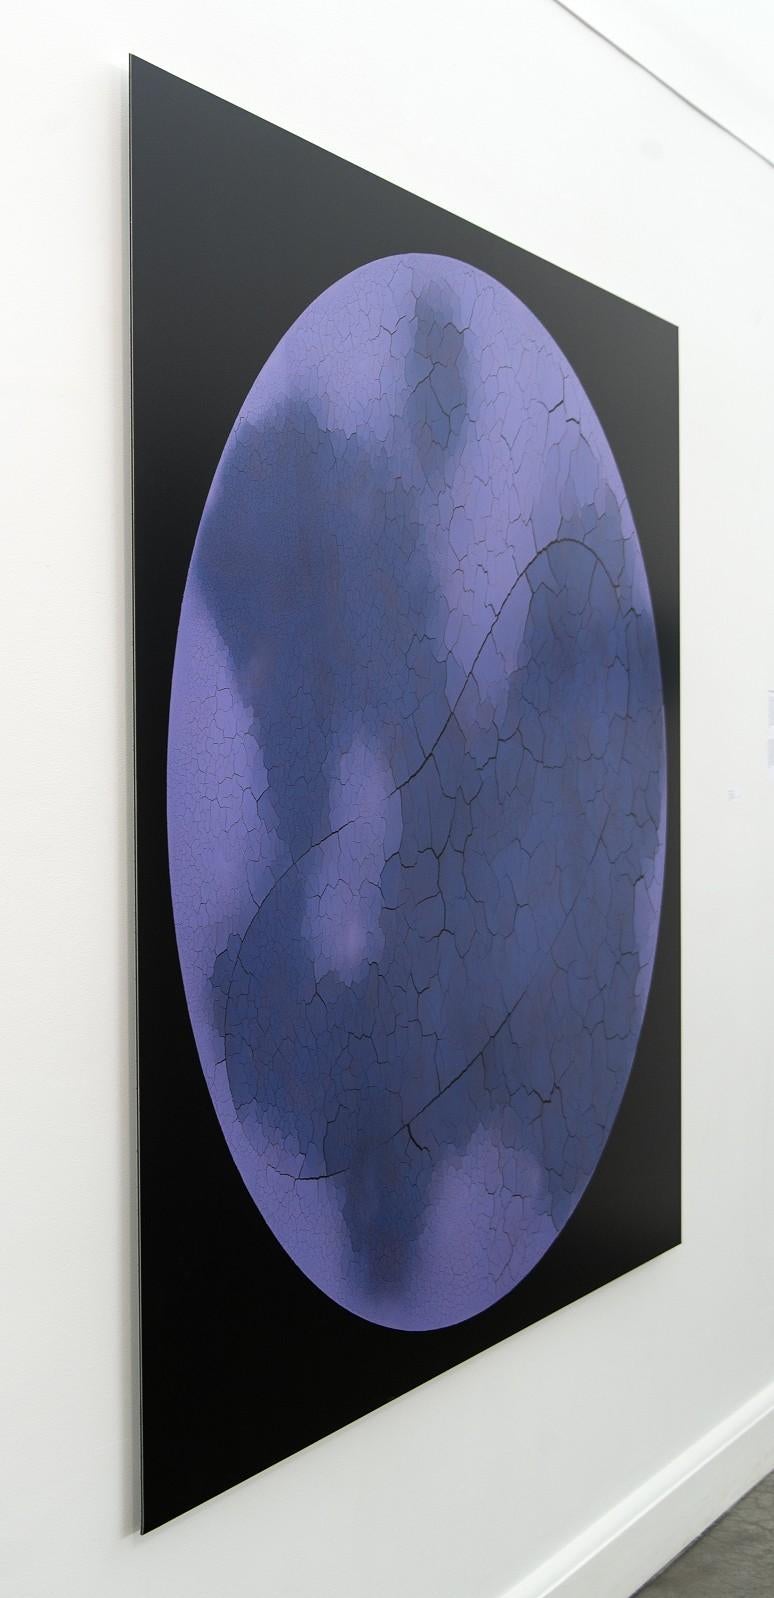 Blue Moon 2 2/3 - grande, spectaculaire, abstraite, impression numérique d'archives en haute résolution  - Photograph de Steven Heinemann